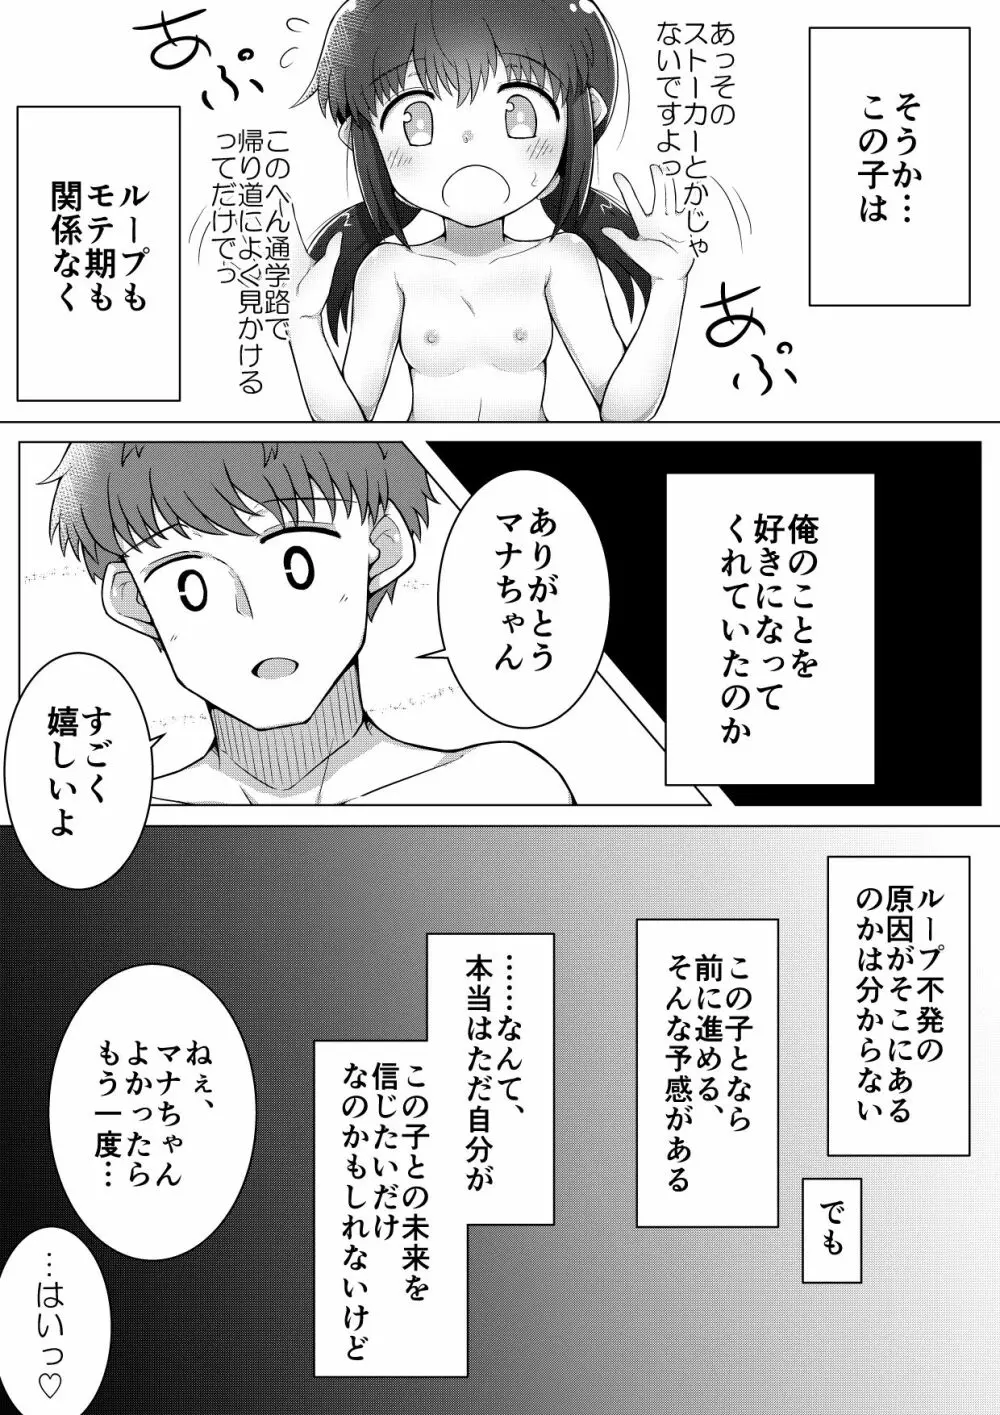 ふぉー・ふーむ・ごっど・わーくす - page28